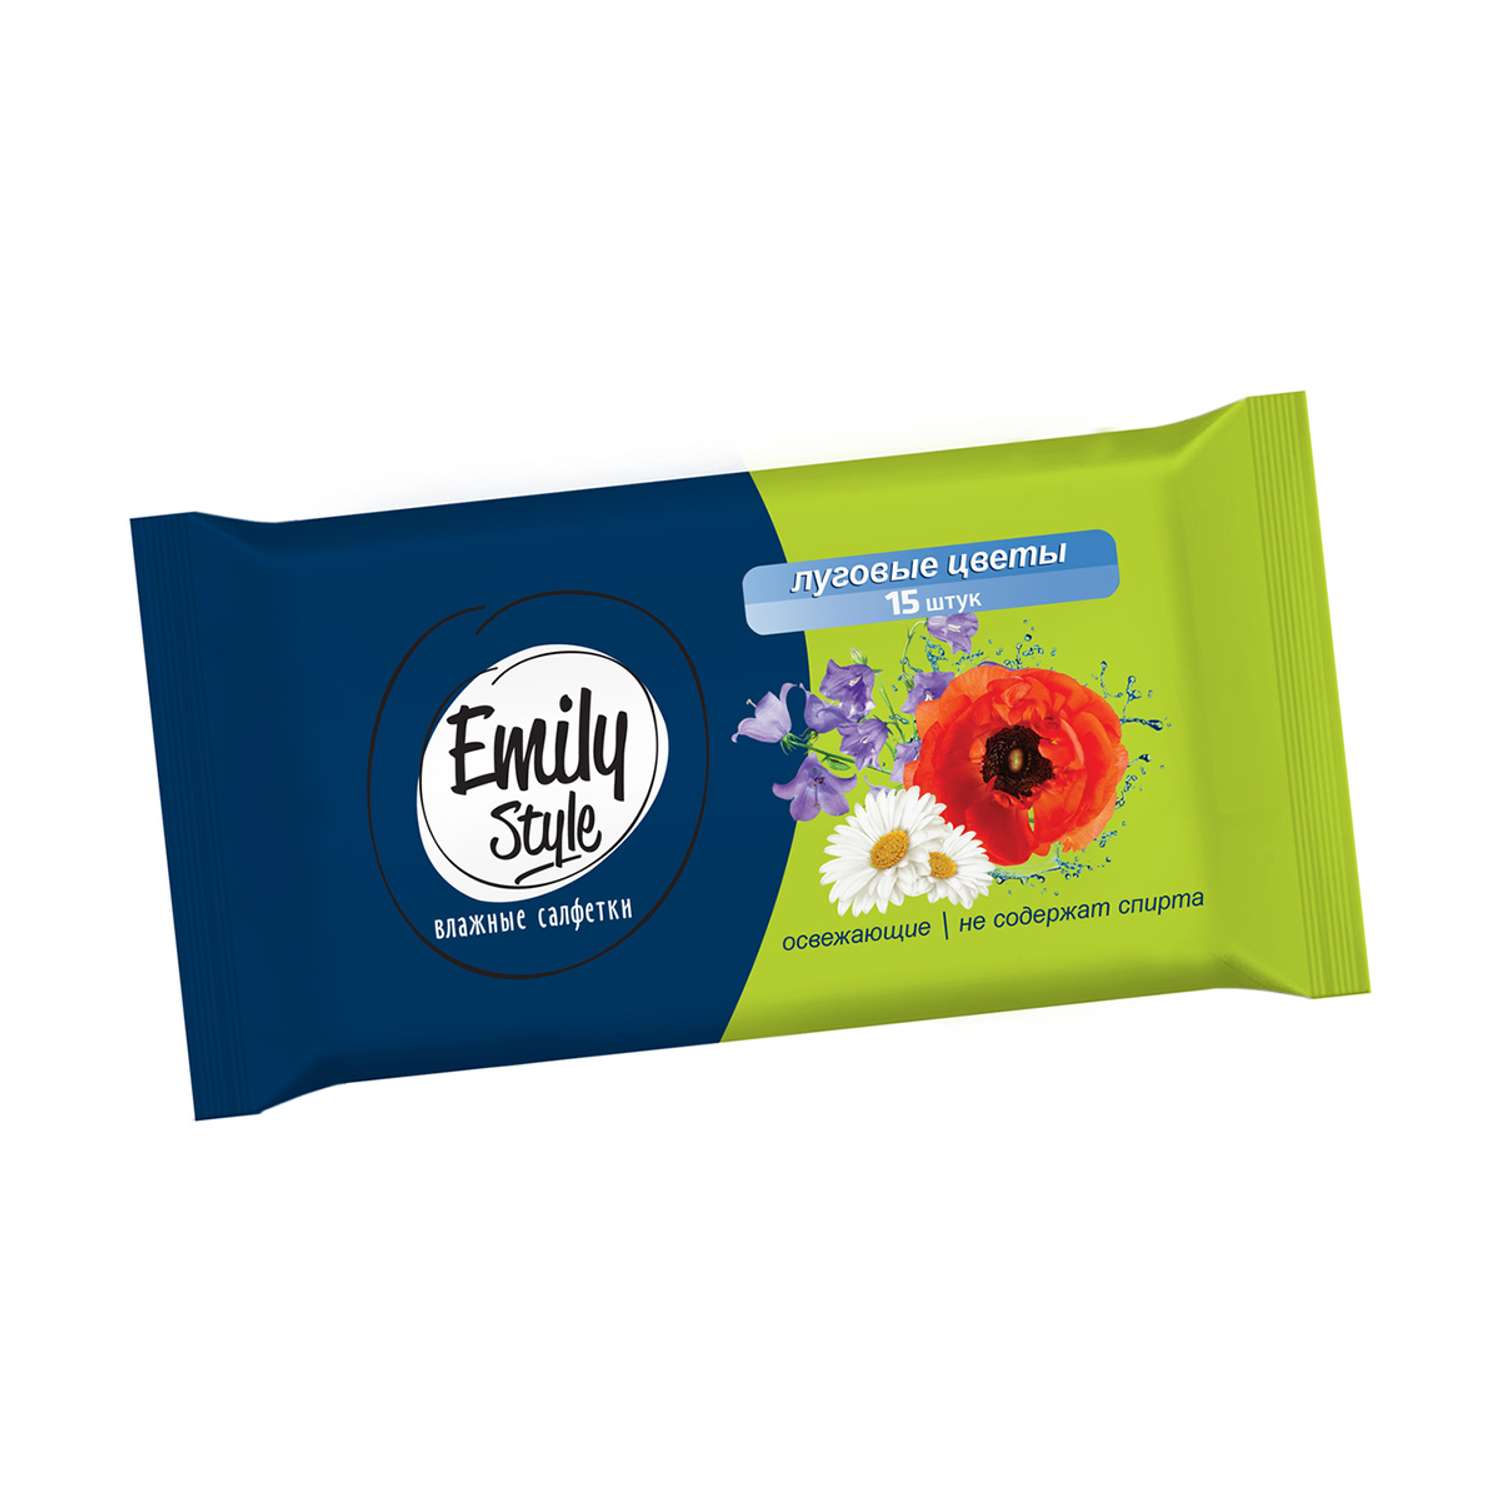 Влажные салфетки Emily style Луговые цветы универсальные упаковка 15 шт - фото 1